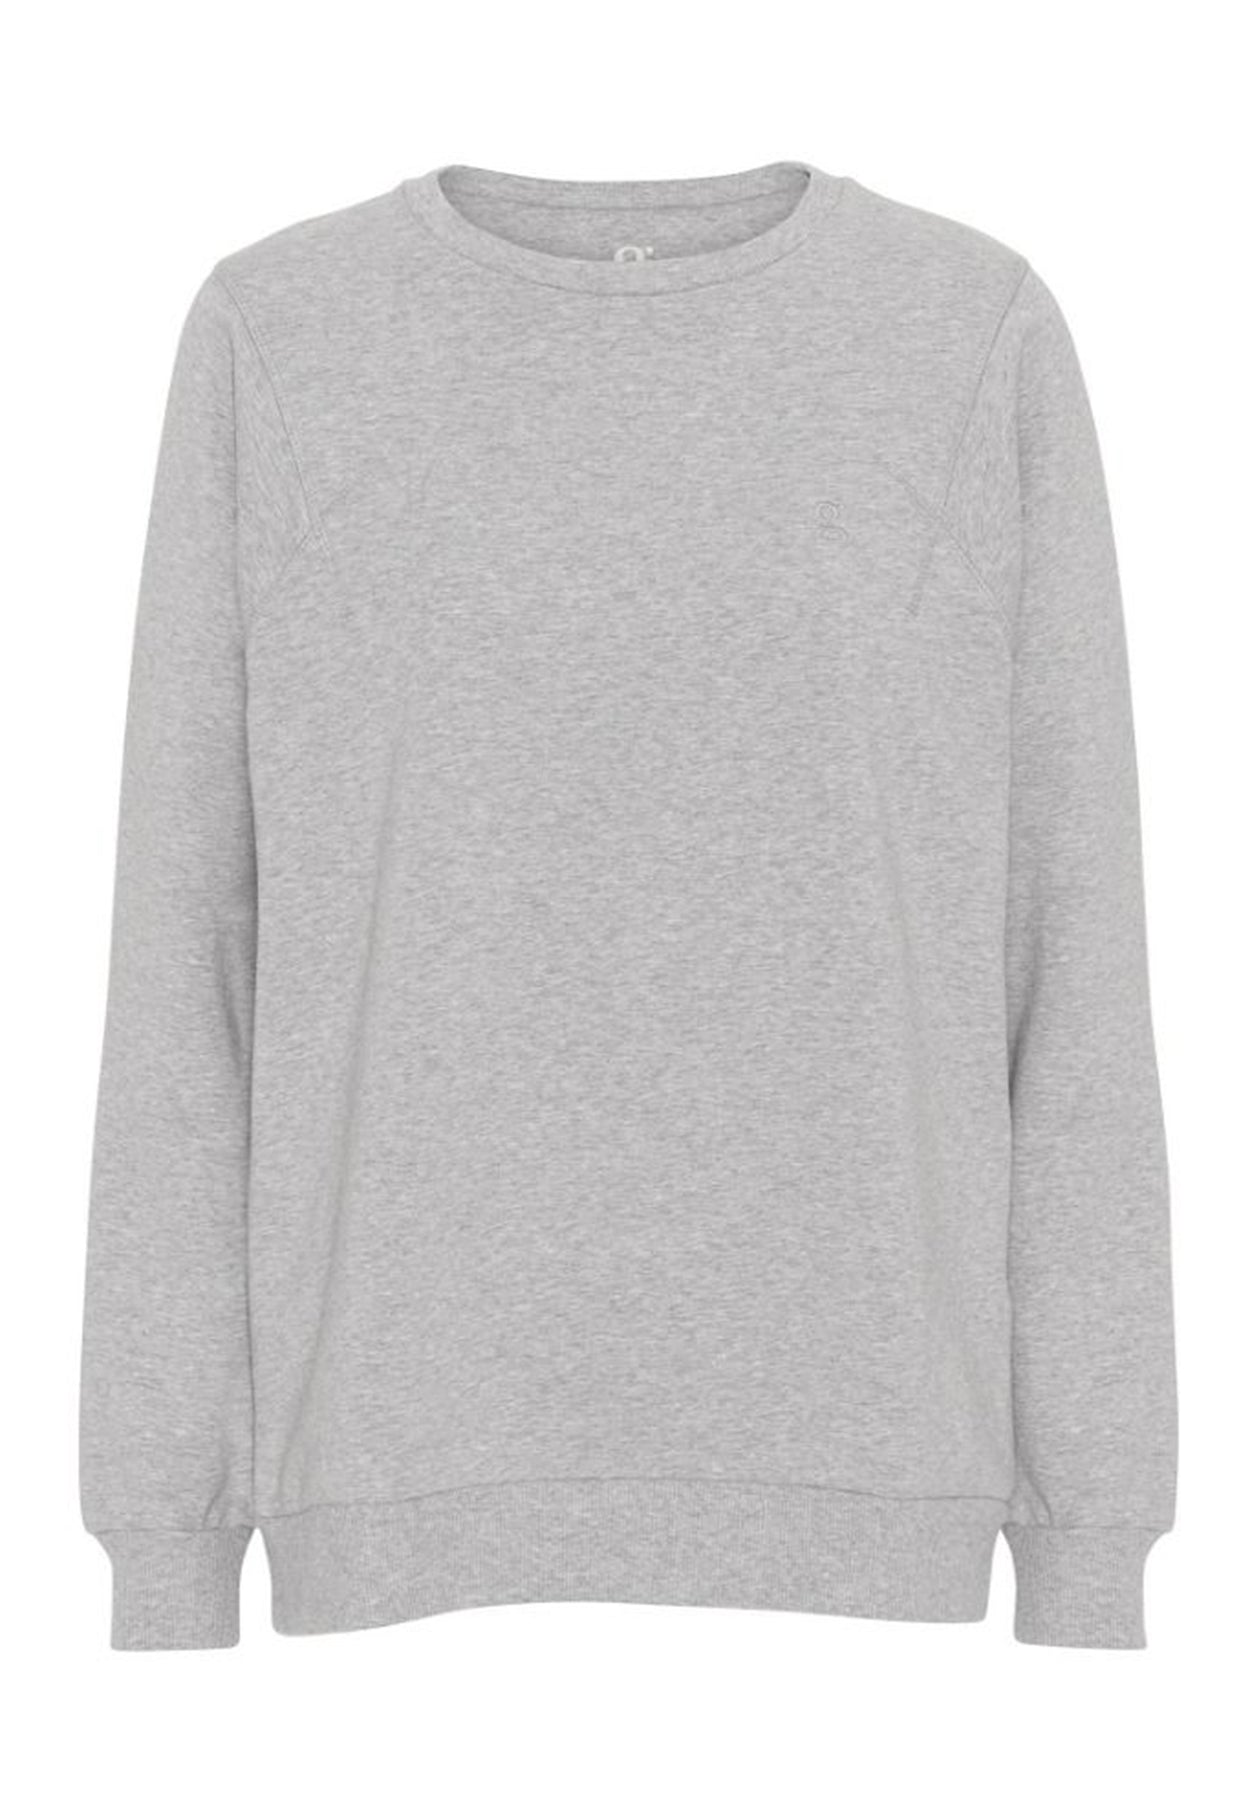 GROBUND Sava sweatshirten - den oversize i grå melange